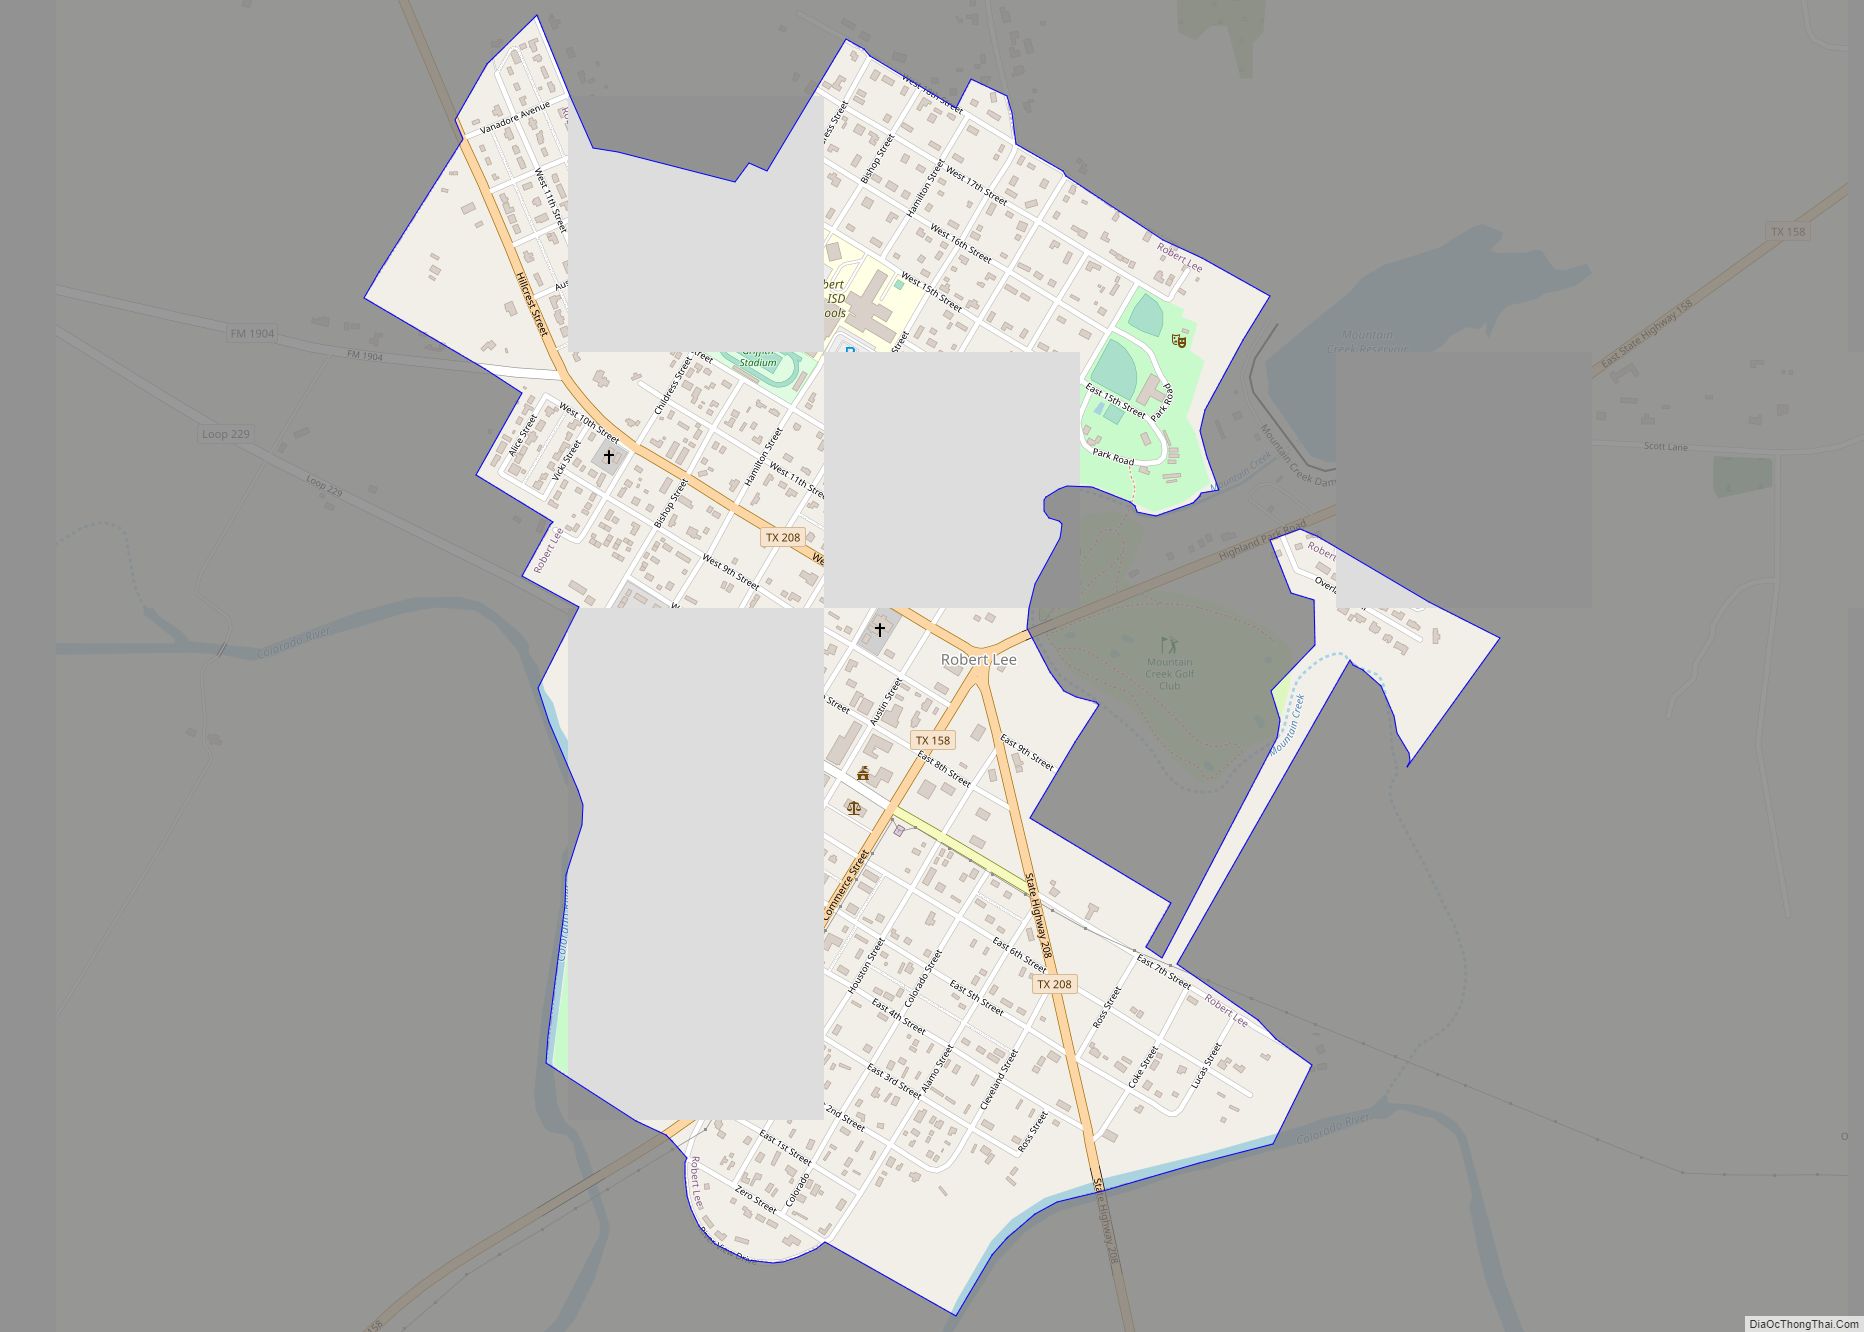 Map of Robert Lee city